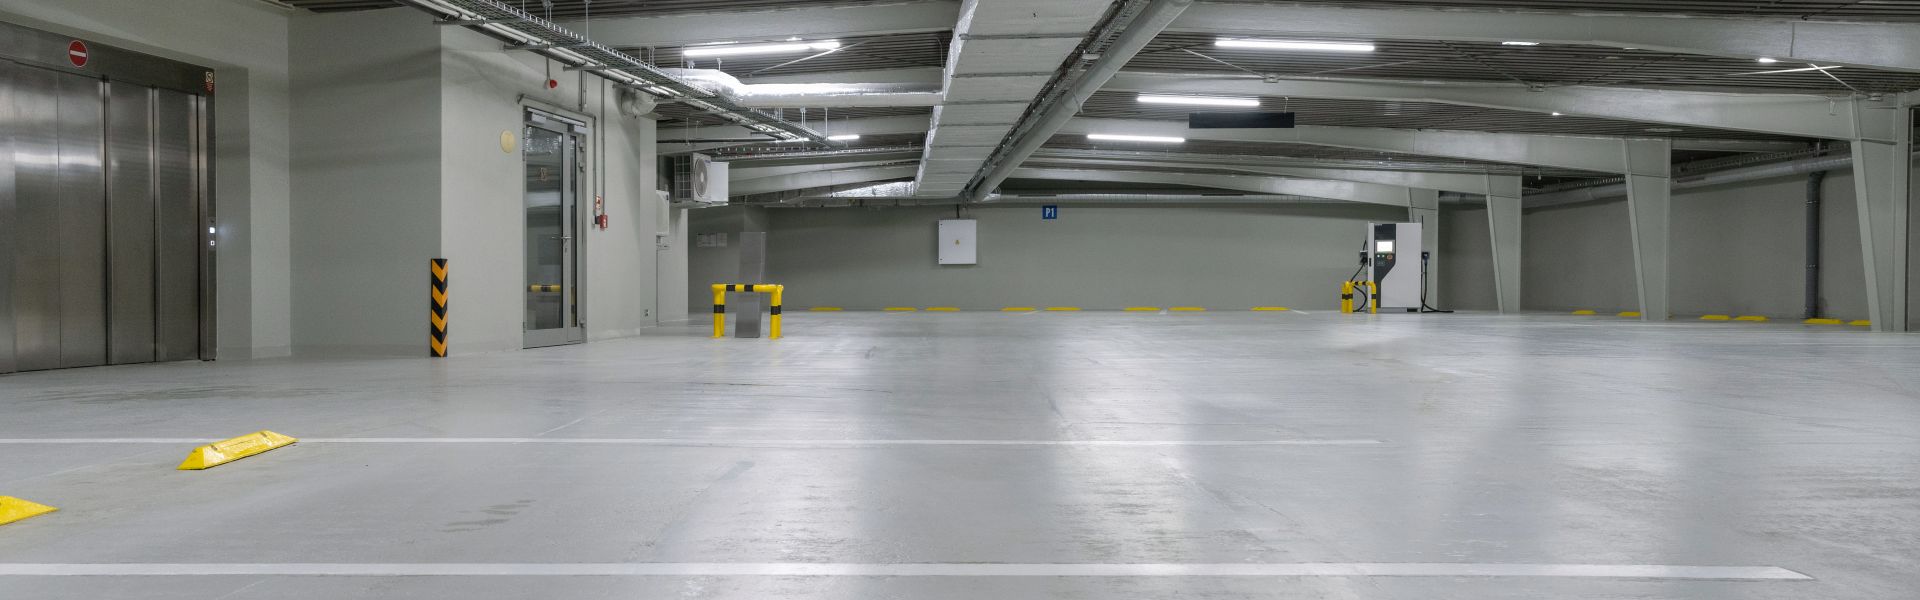 Parkovací garáže